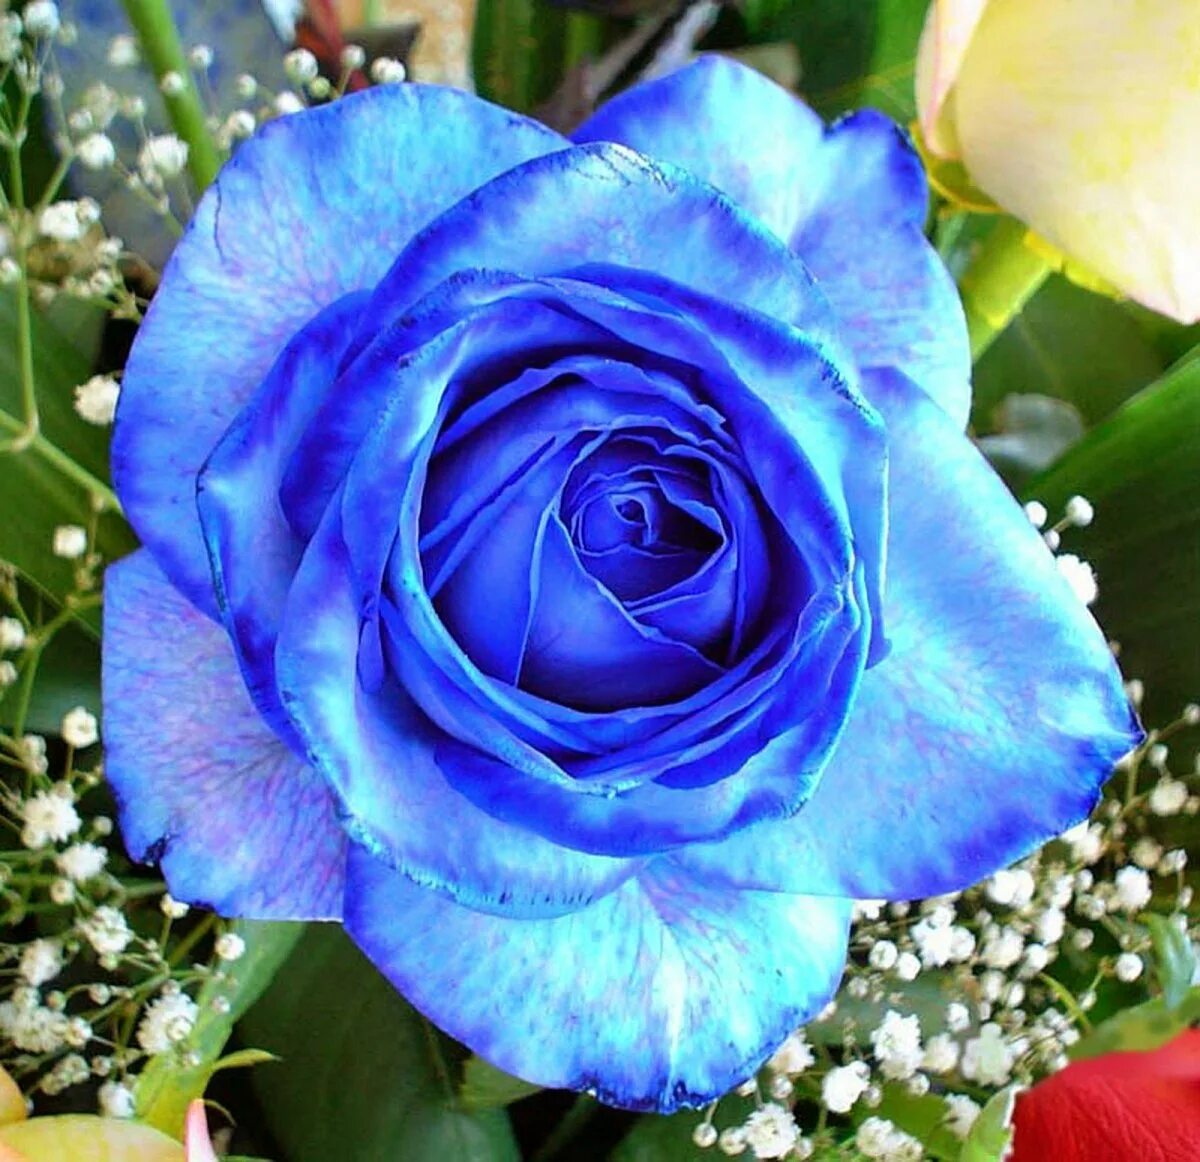 Фотография синего цвета. Роза Пасифик Блю. Роза Аманда Блю. Роза плетистая голубая "Блю Мун". Роза Венделла синяя.